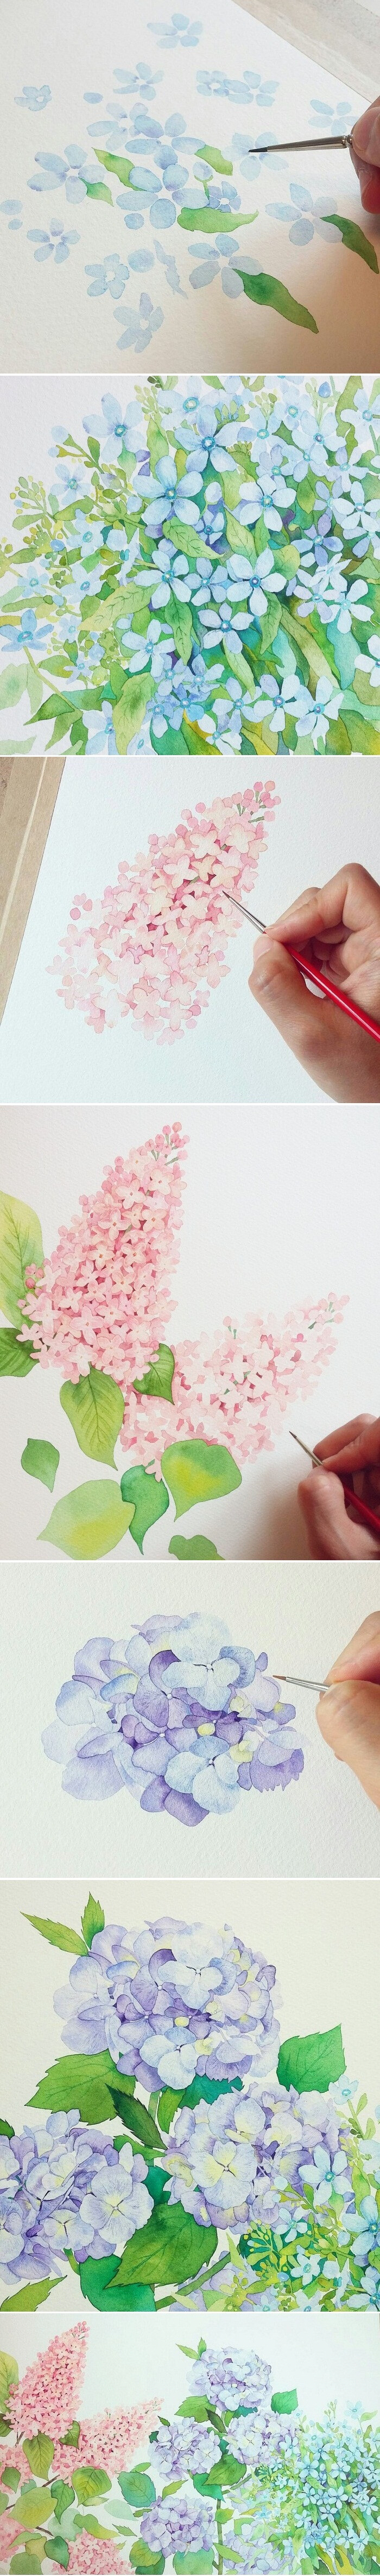 lovely blossom 水彩画教程 韩国画师김소라